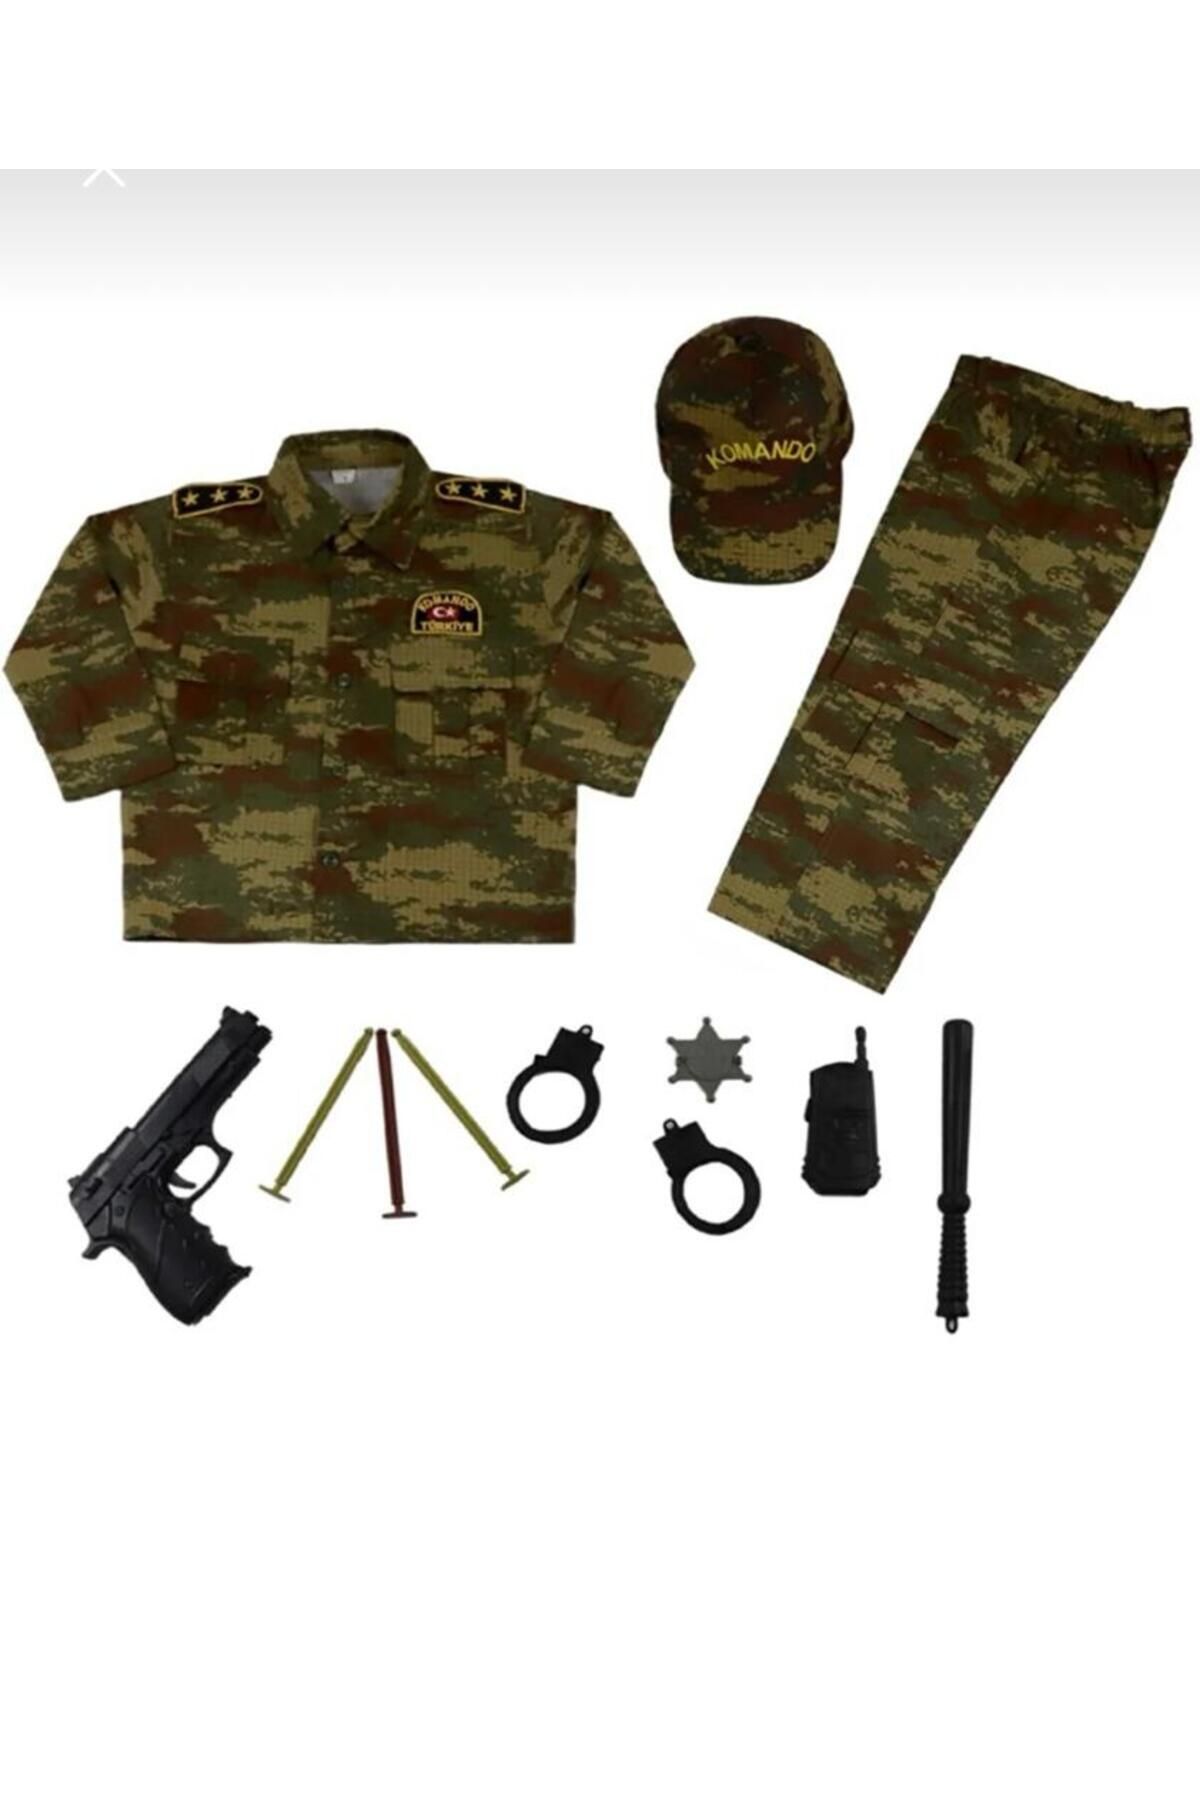 Haba Asker Takımı- Nano Model Kahverengi Asker Takımı Ve Oyuncak Takımı